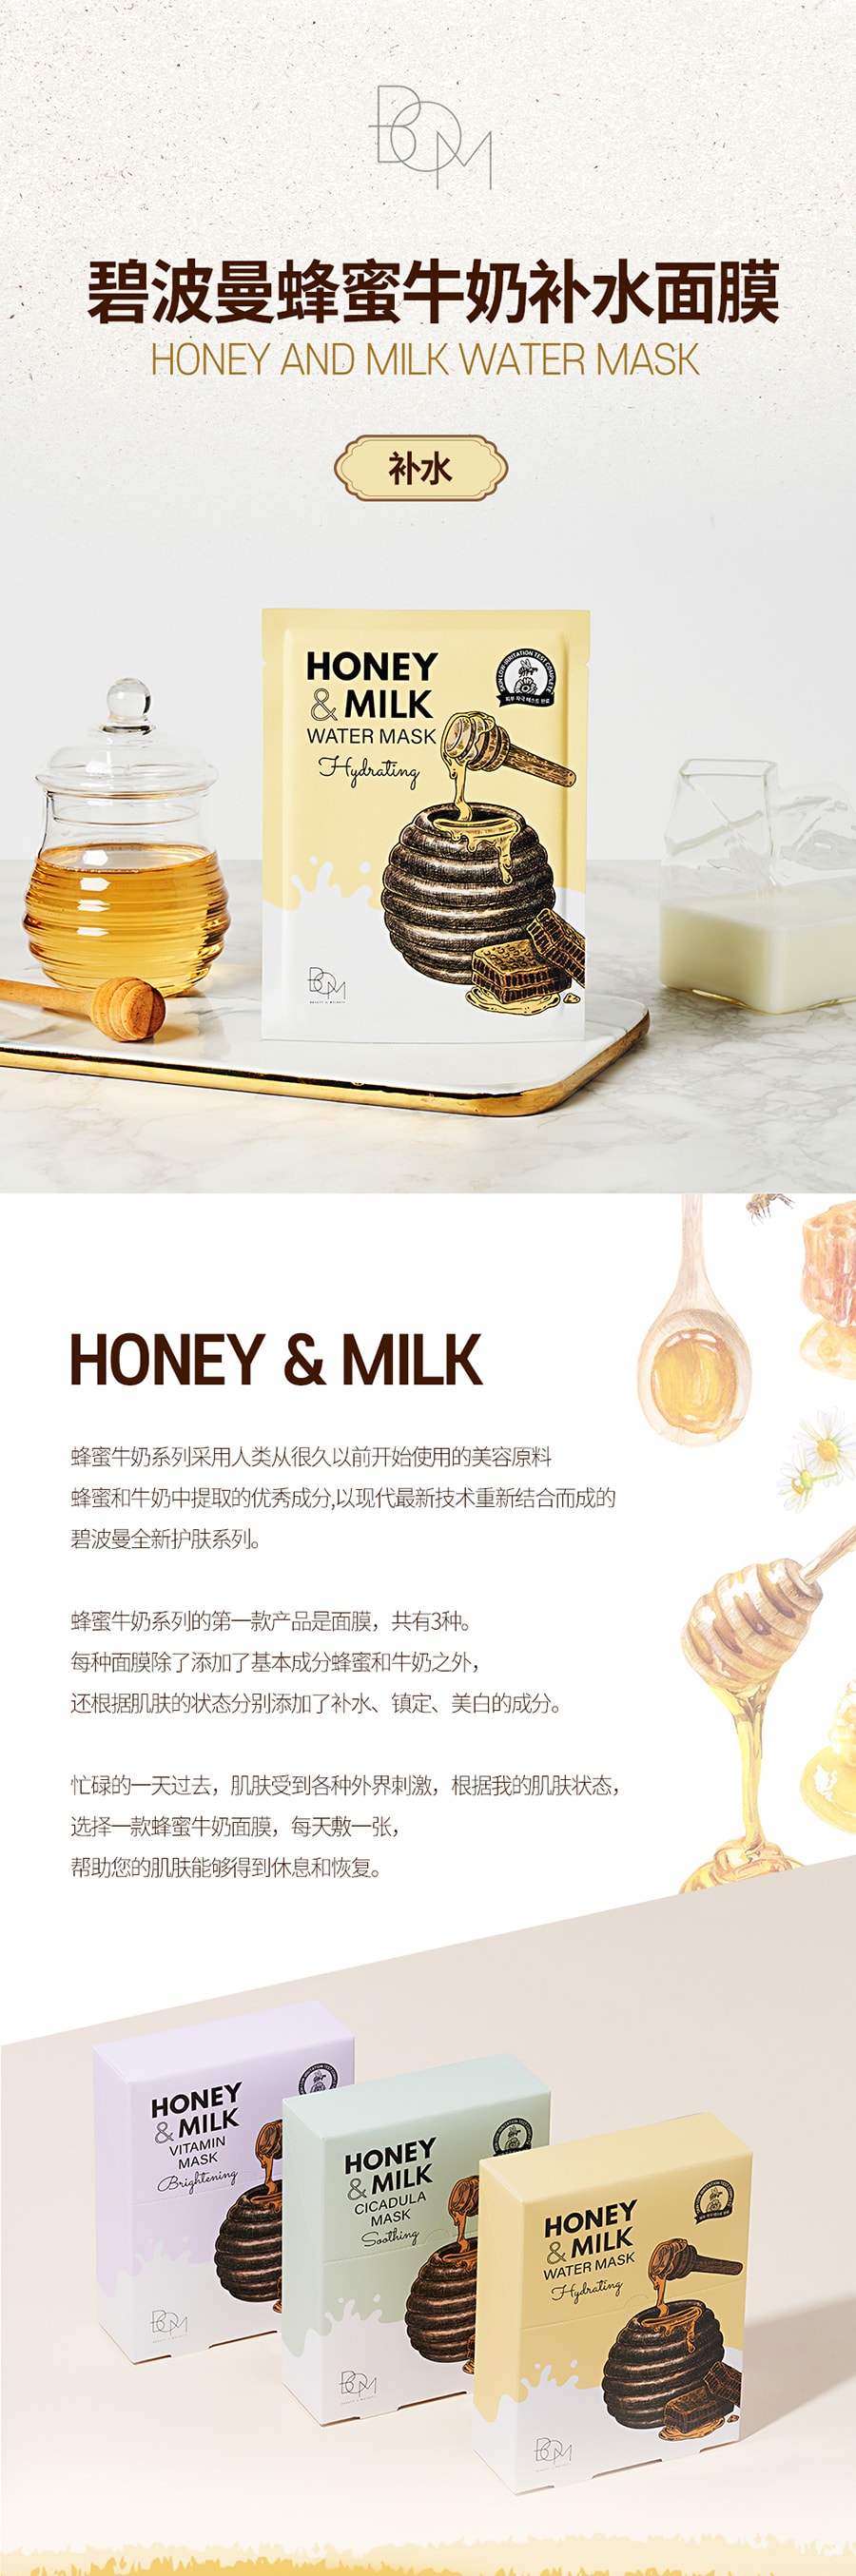 韓國BOM碧波曼清潤超強補水面膜 舒緩保濕 蜂蜜牛奶透亮敏感肌友善 10片/250g